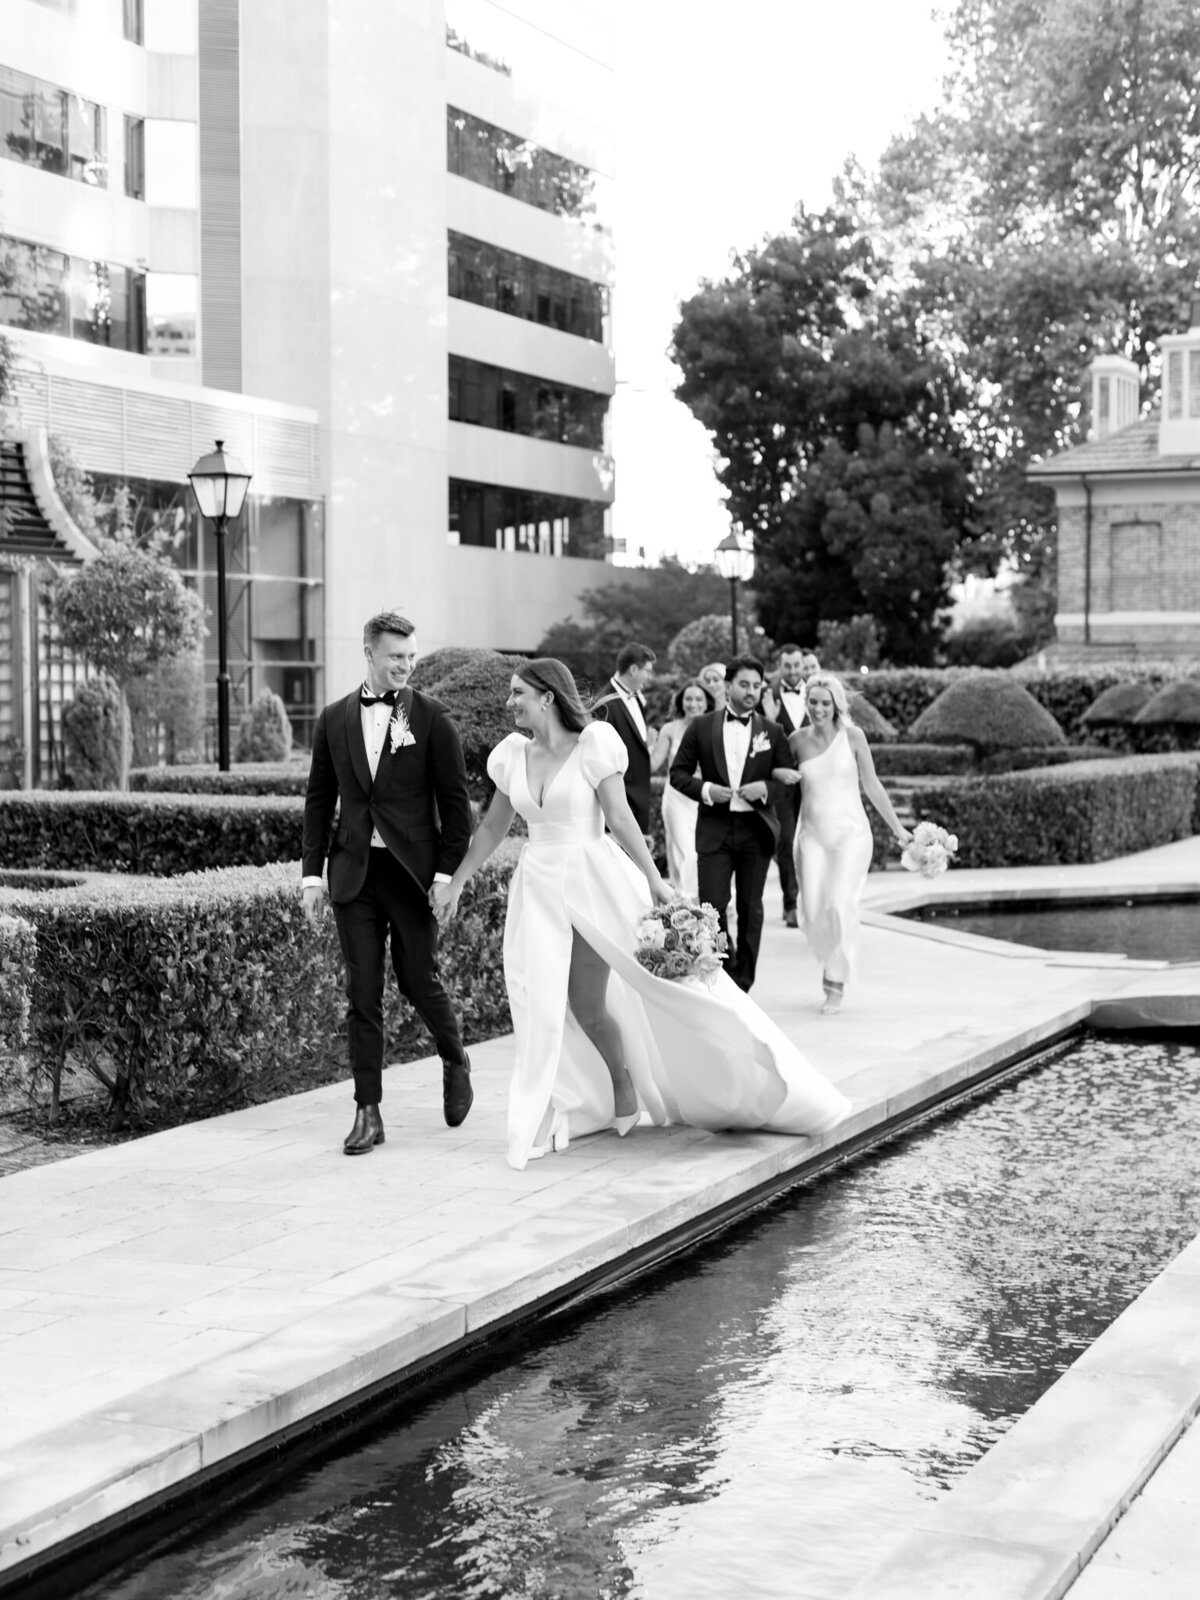 Australian Wedding Photographer Kath Young - Lara & Nick, Lamonts Wedding-53